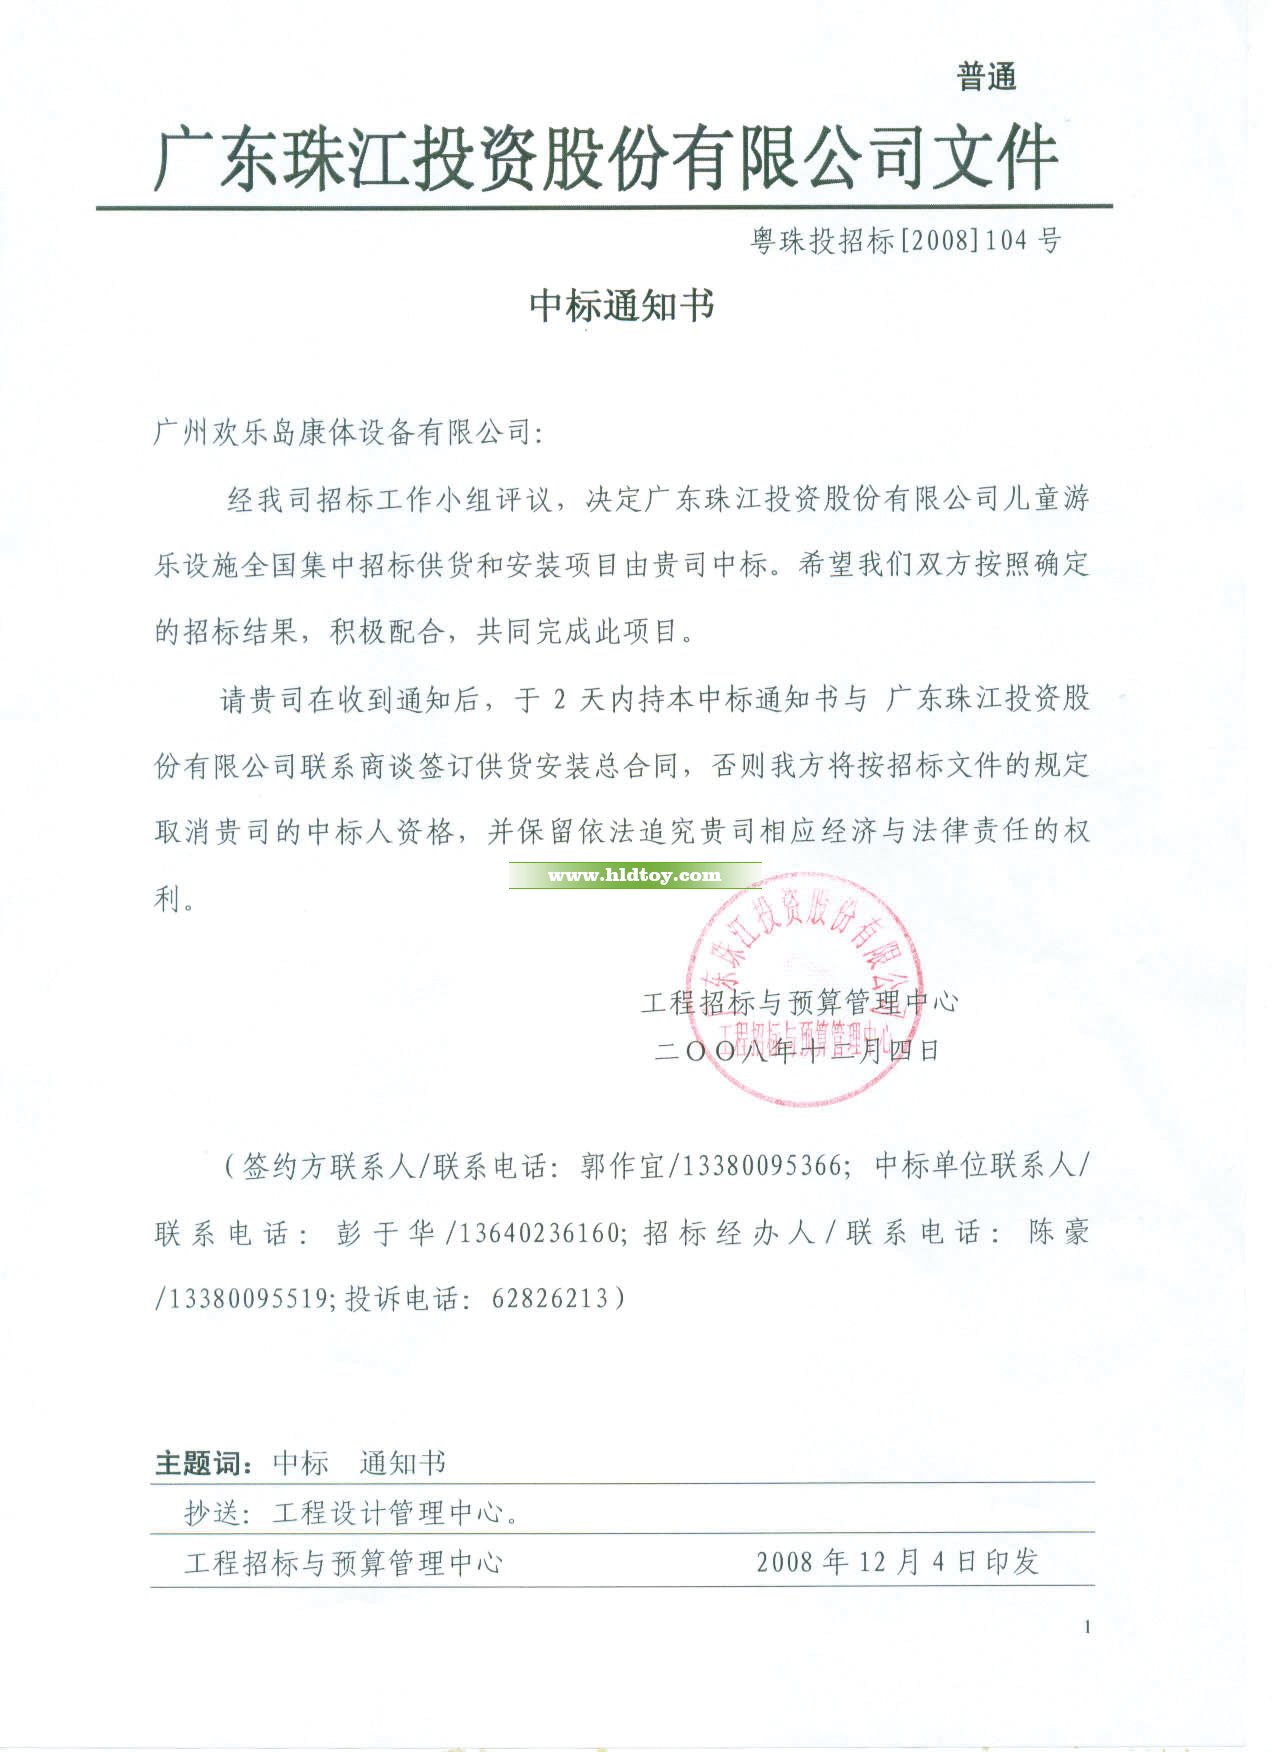 广东珠江投资股份有限公司儿童游乐设施工程